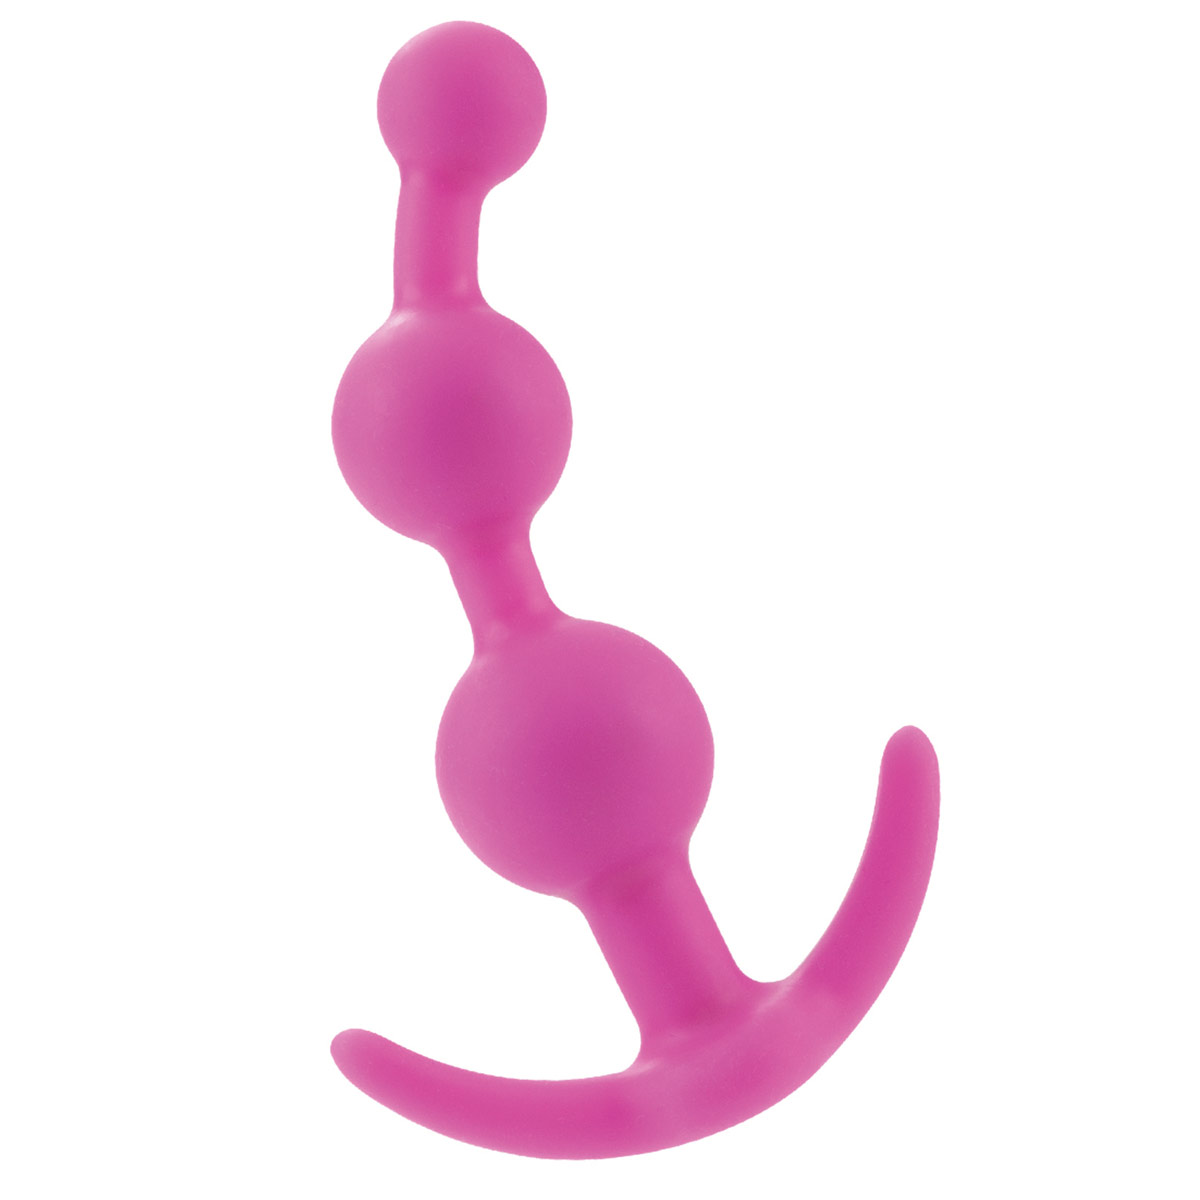 Анальная цепочка из бархатистого силикона розового цвета состоят из 3 шариков и ограничительного основания. Основание анатомически изогнуто, что позволяет носить цепочку внутри тела и использовать не только во время полового акта.